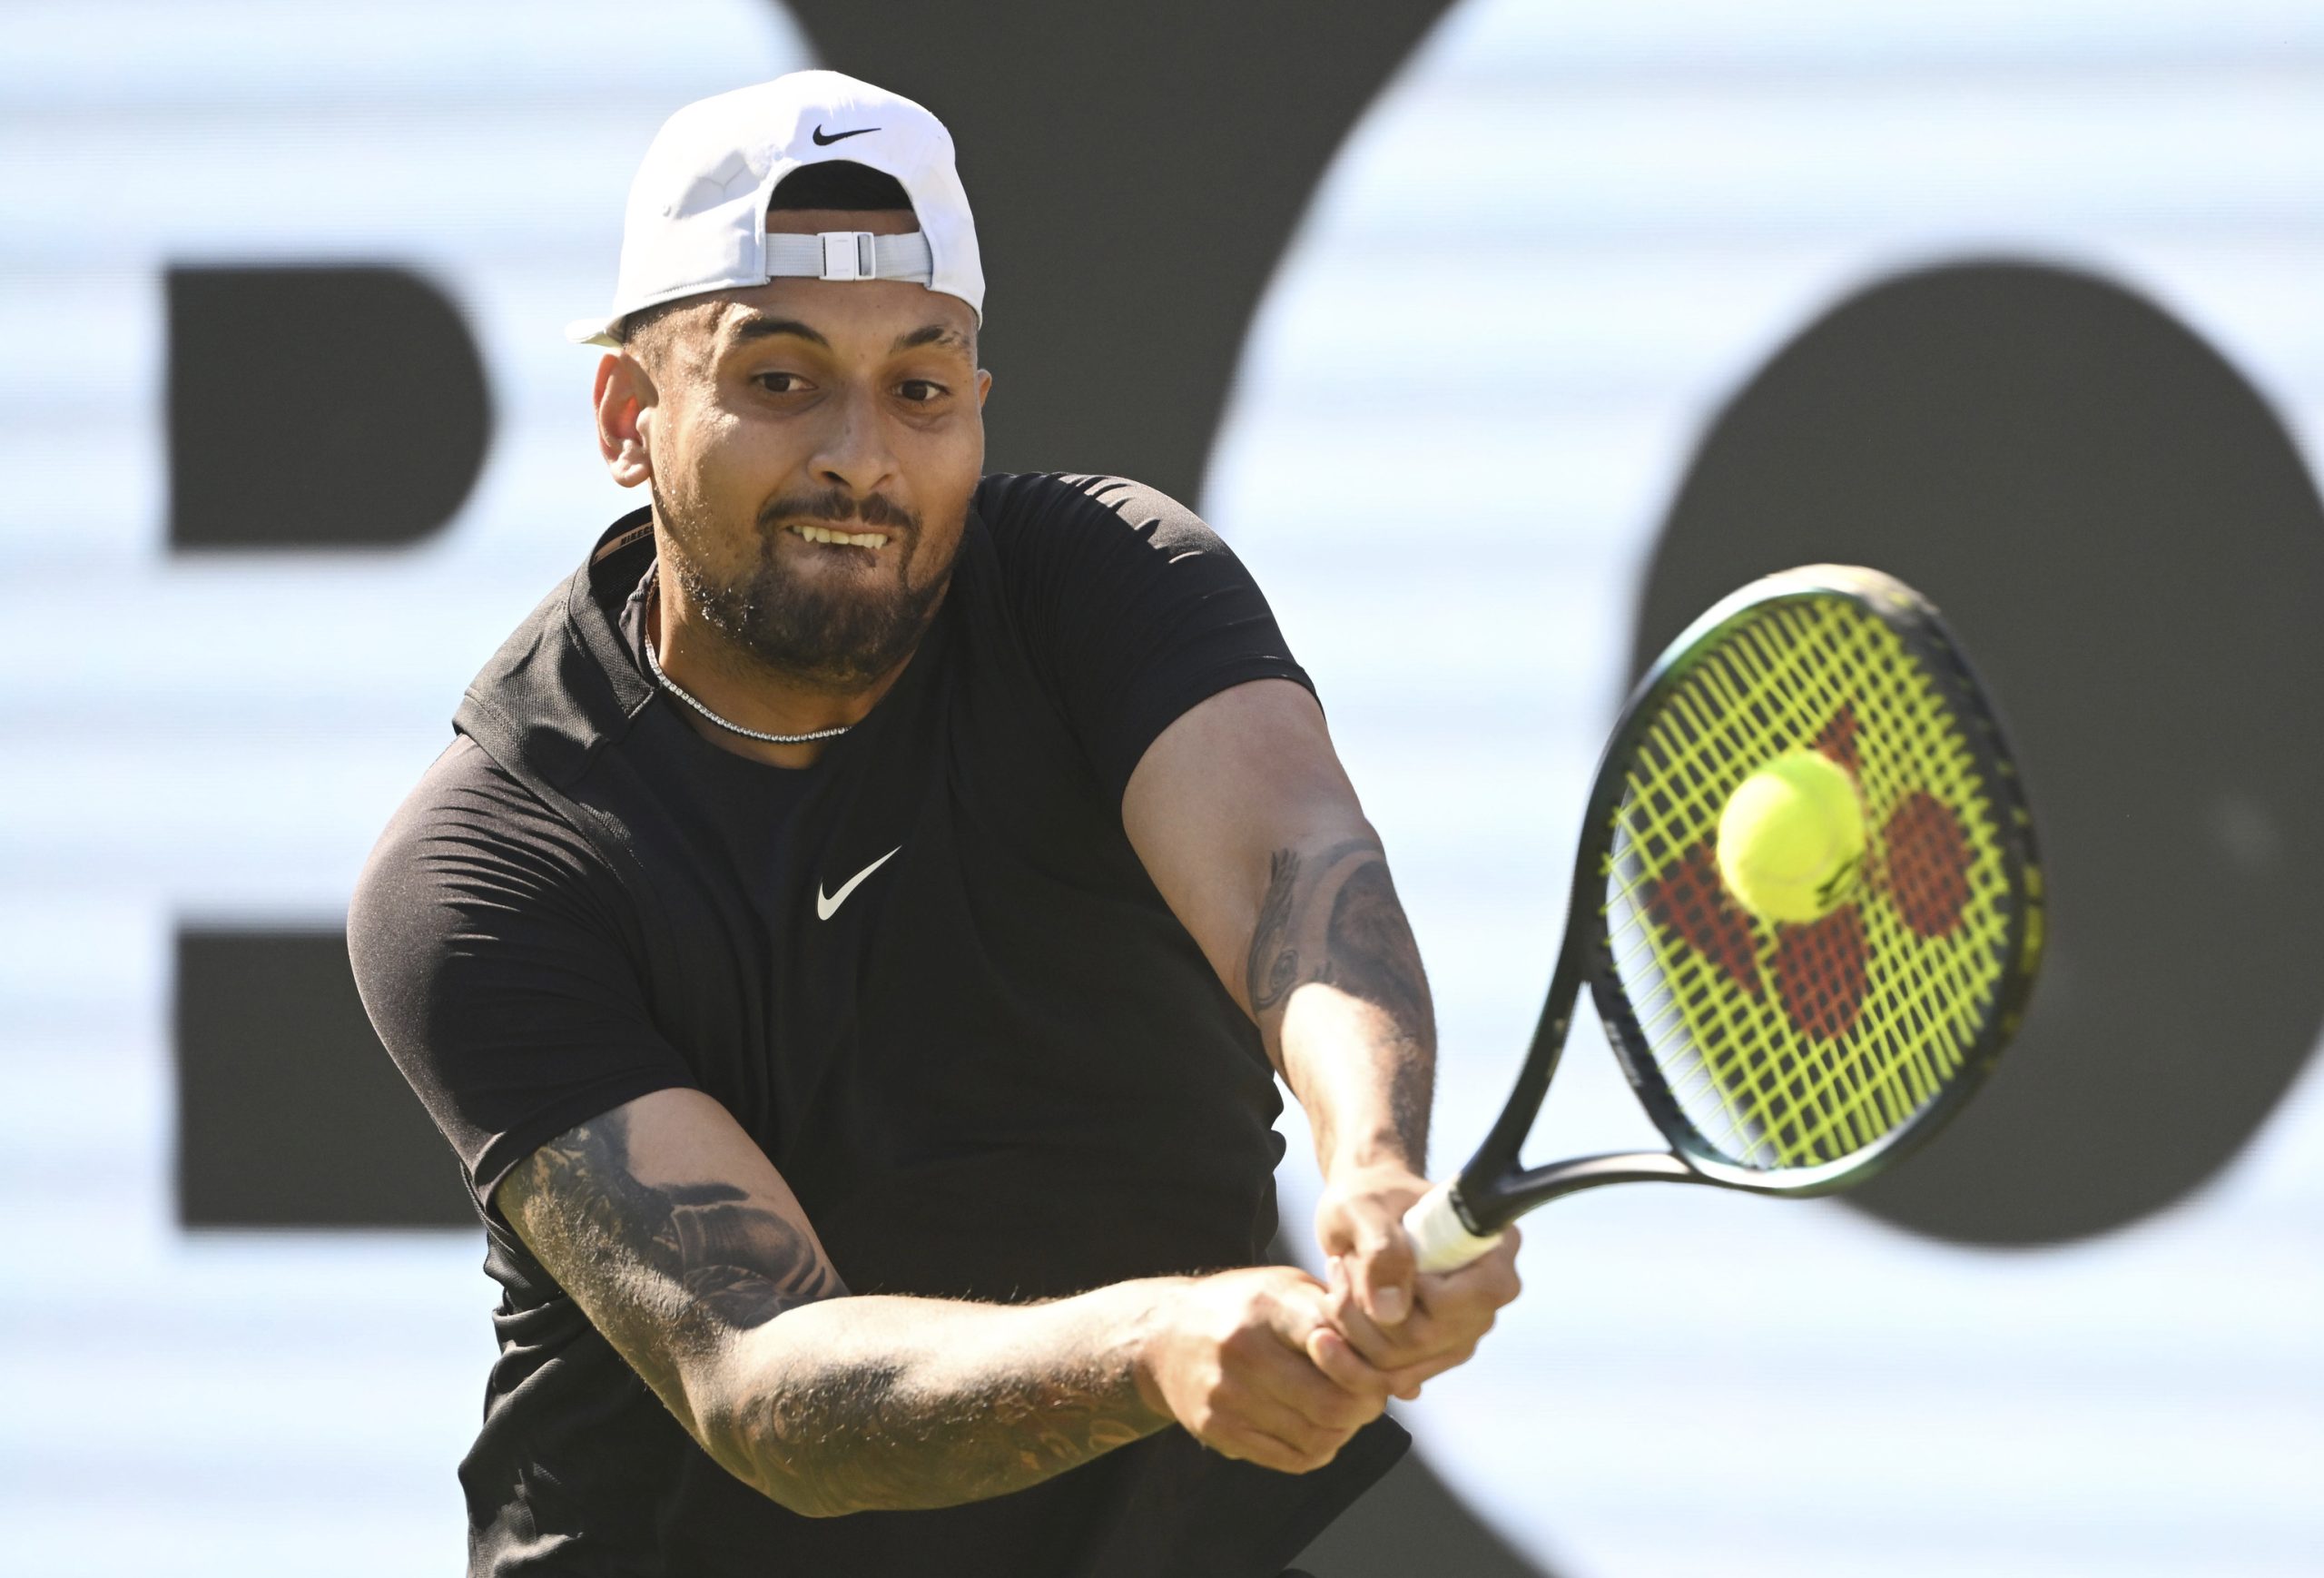 Kyrgios desvela que pasÃ³ por un psiquiÃ¡trico tras Wimbledon 2019: "PensÃ© realmente en suicidarme"